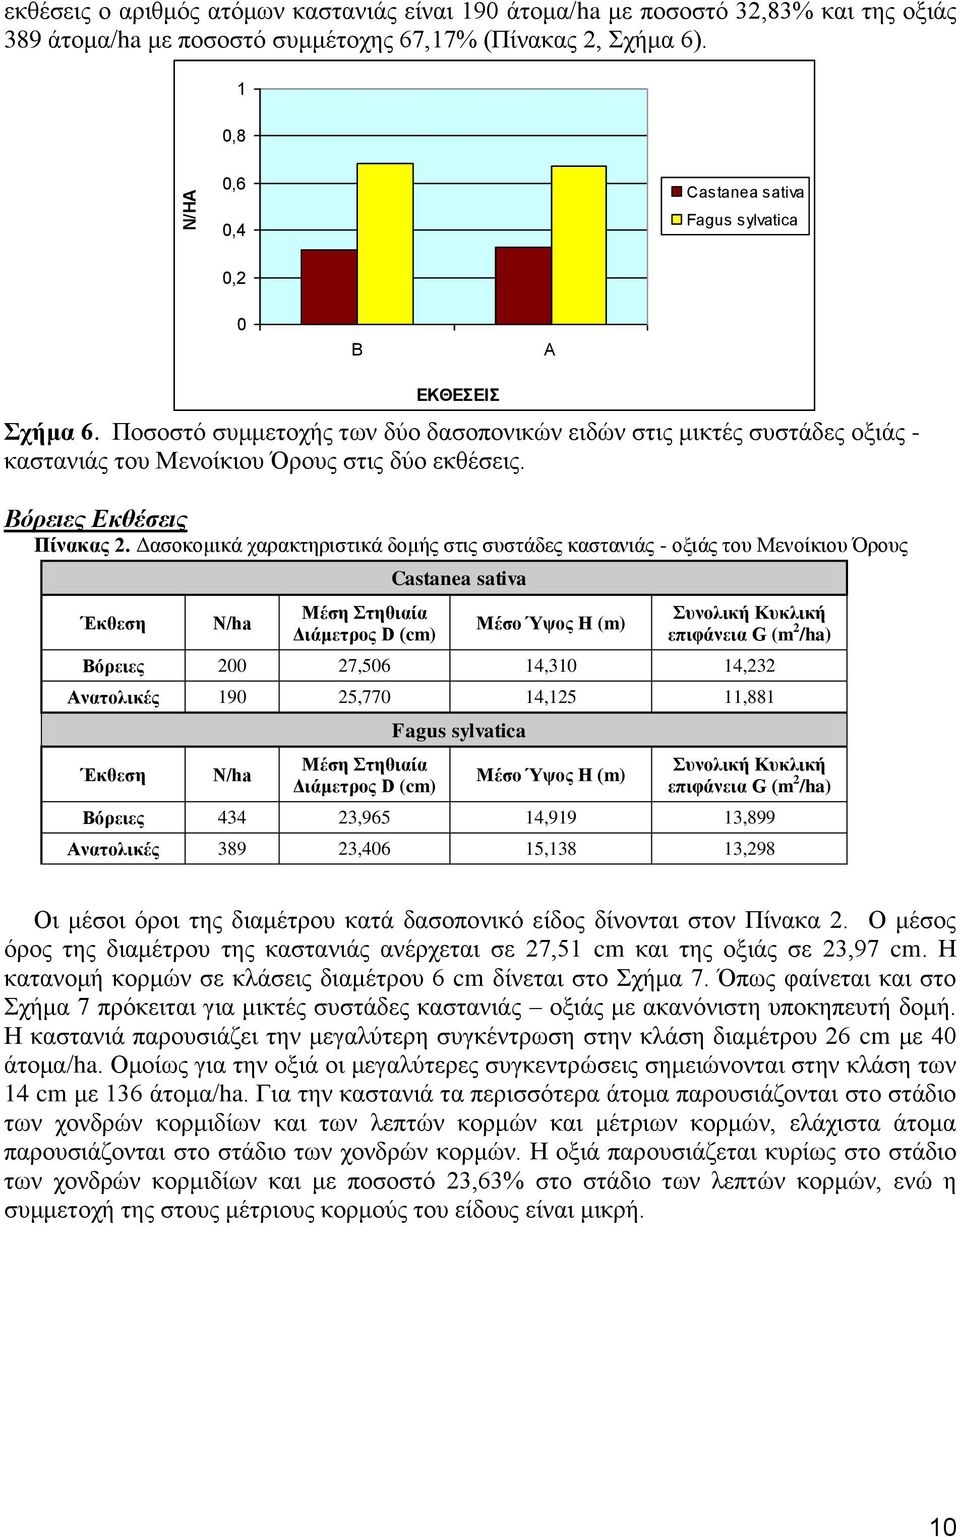 Δασοκομικά χαρακτηριστικά δομής στις συστάδες καστανιάς - οξιάς του Μενοίκιου Όρους Έκθεση Ν/ha Μέση Στηθιαία Διάμετρος D (cm) Μέσο Ύψος H (m) Συνολική Κυκλική επιφάνεια G (m 2 /ha) Βόρειες 0 27,506